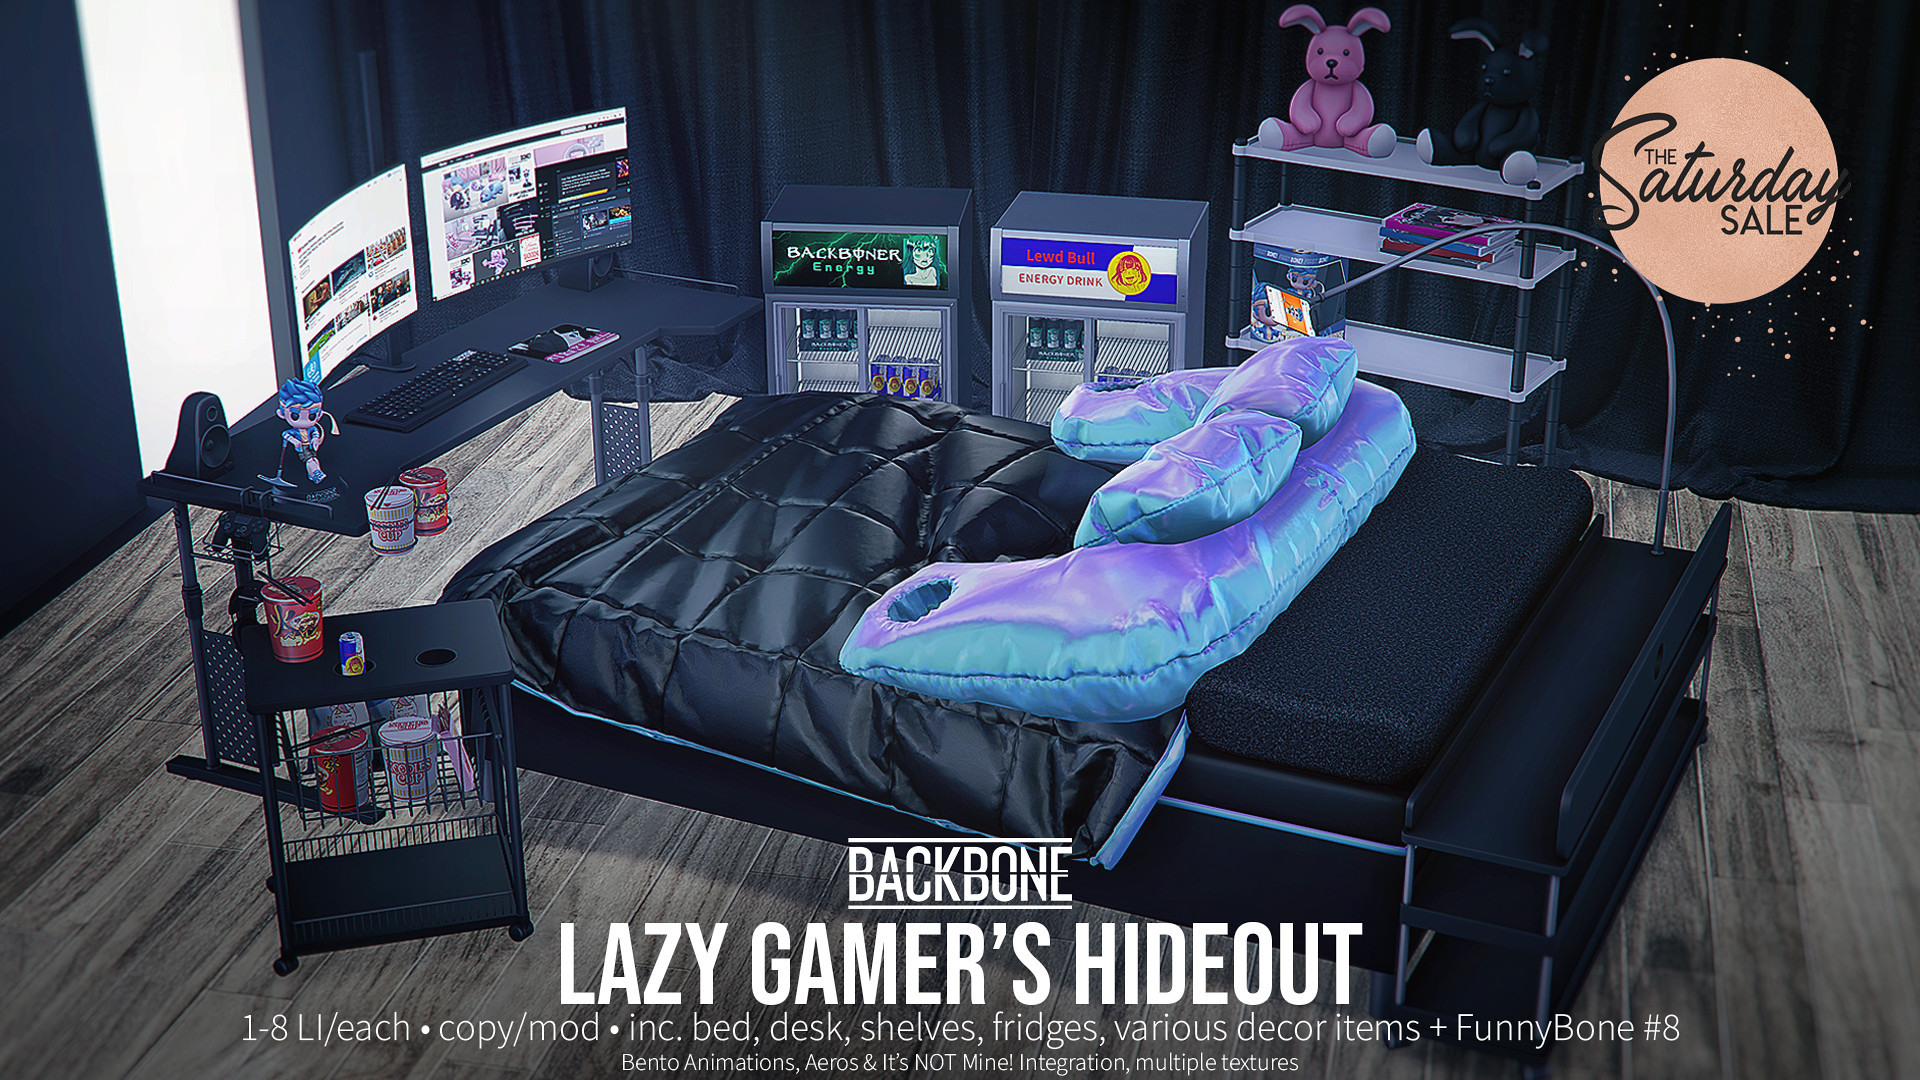 BackBone – Lazy Gamer’s Hideout